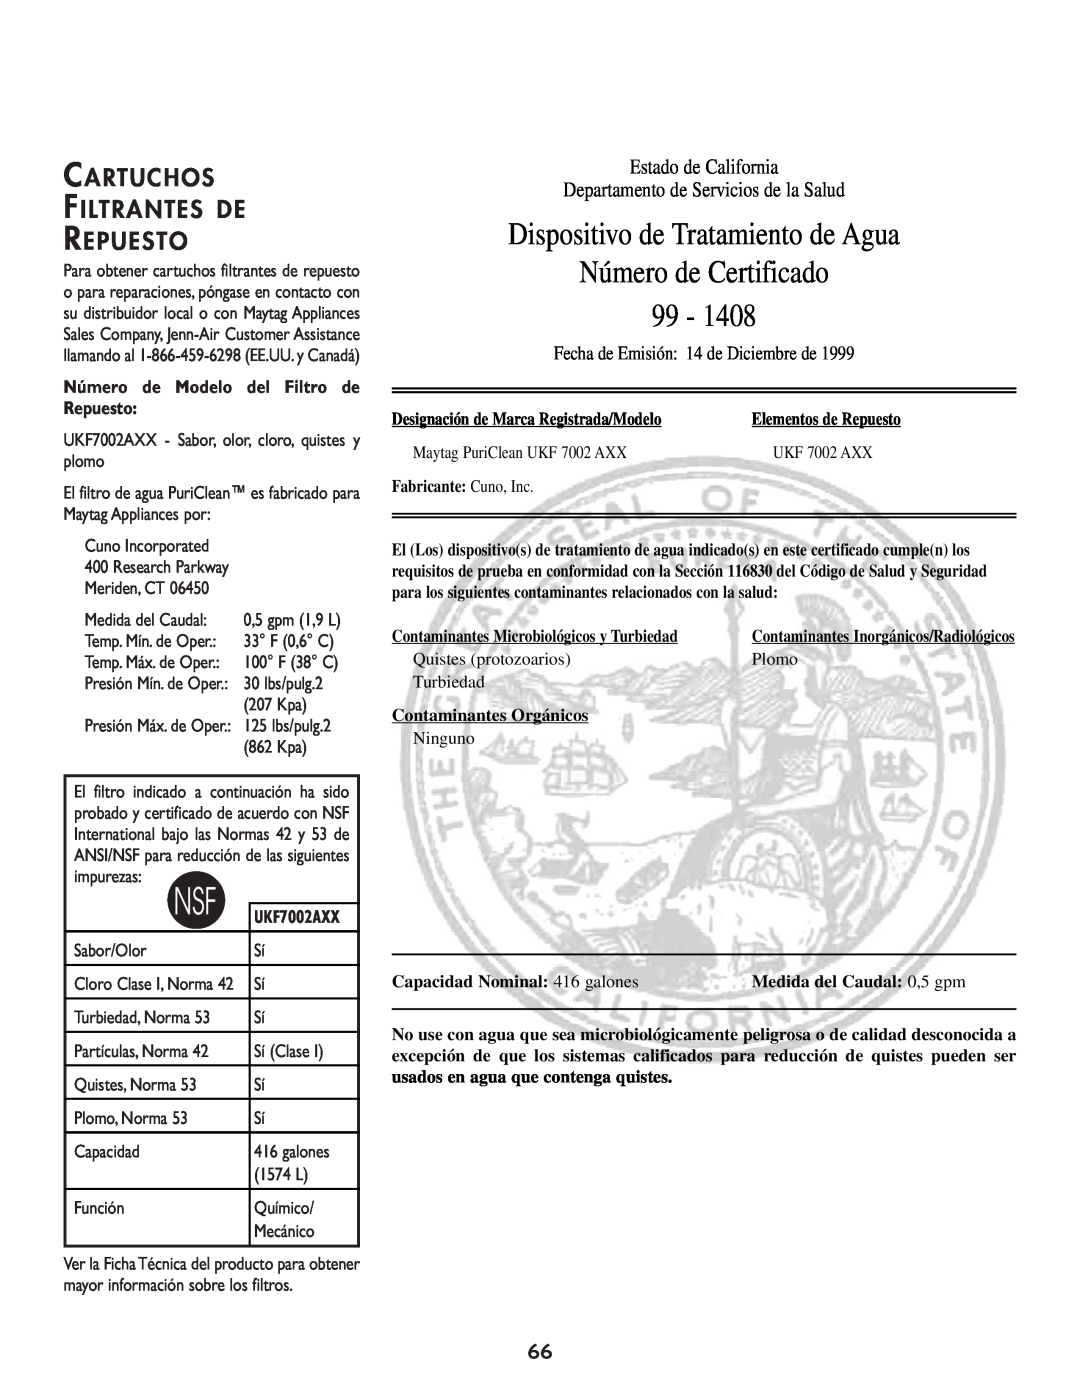 Cuno 111405-1 manual Dispositivo de Tratamiento de Agua, Número de Certificado 99, Cartuchos Filtrantes De Repuesto 